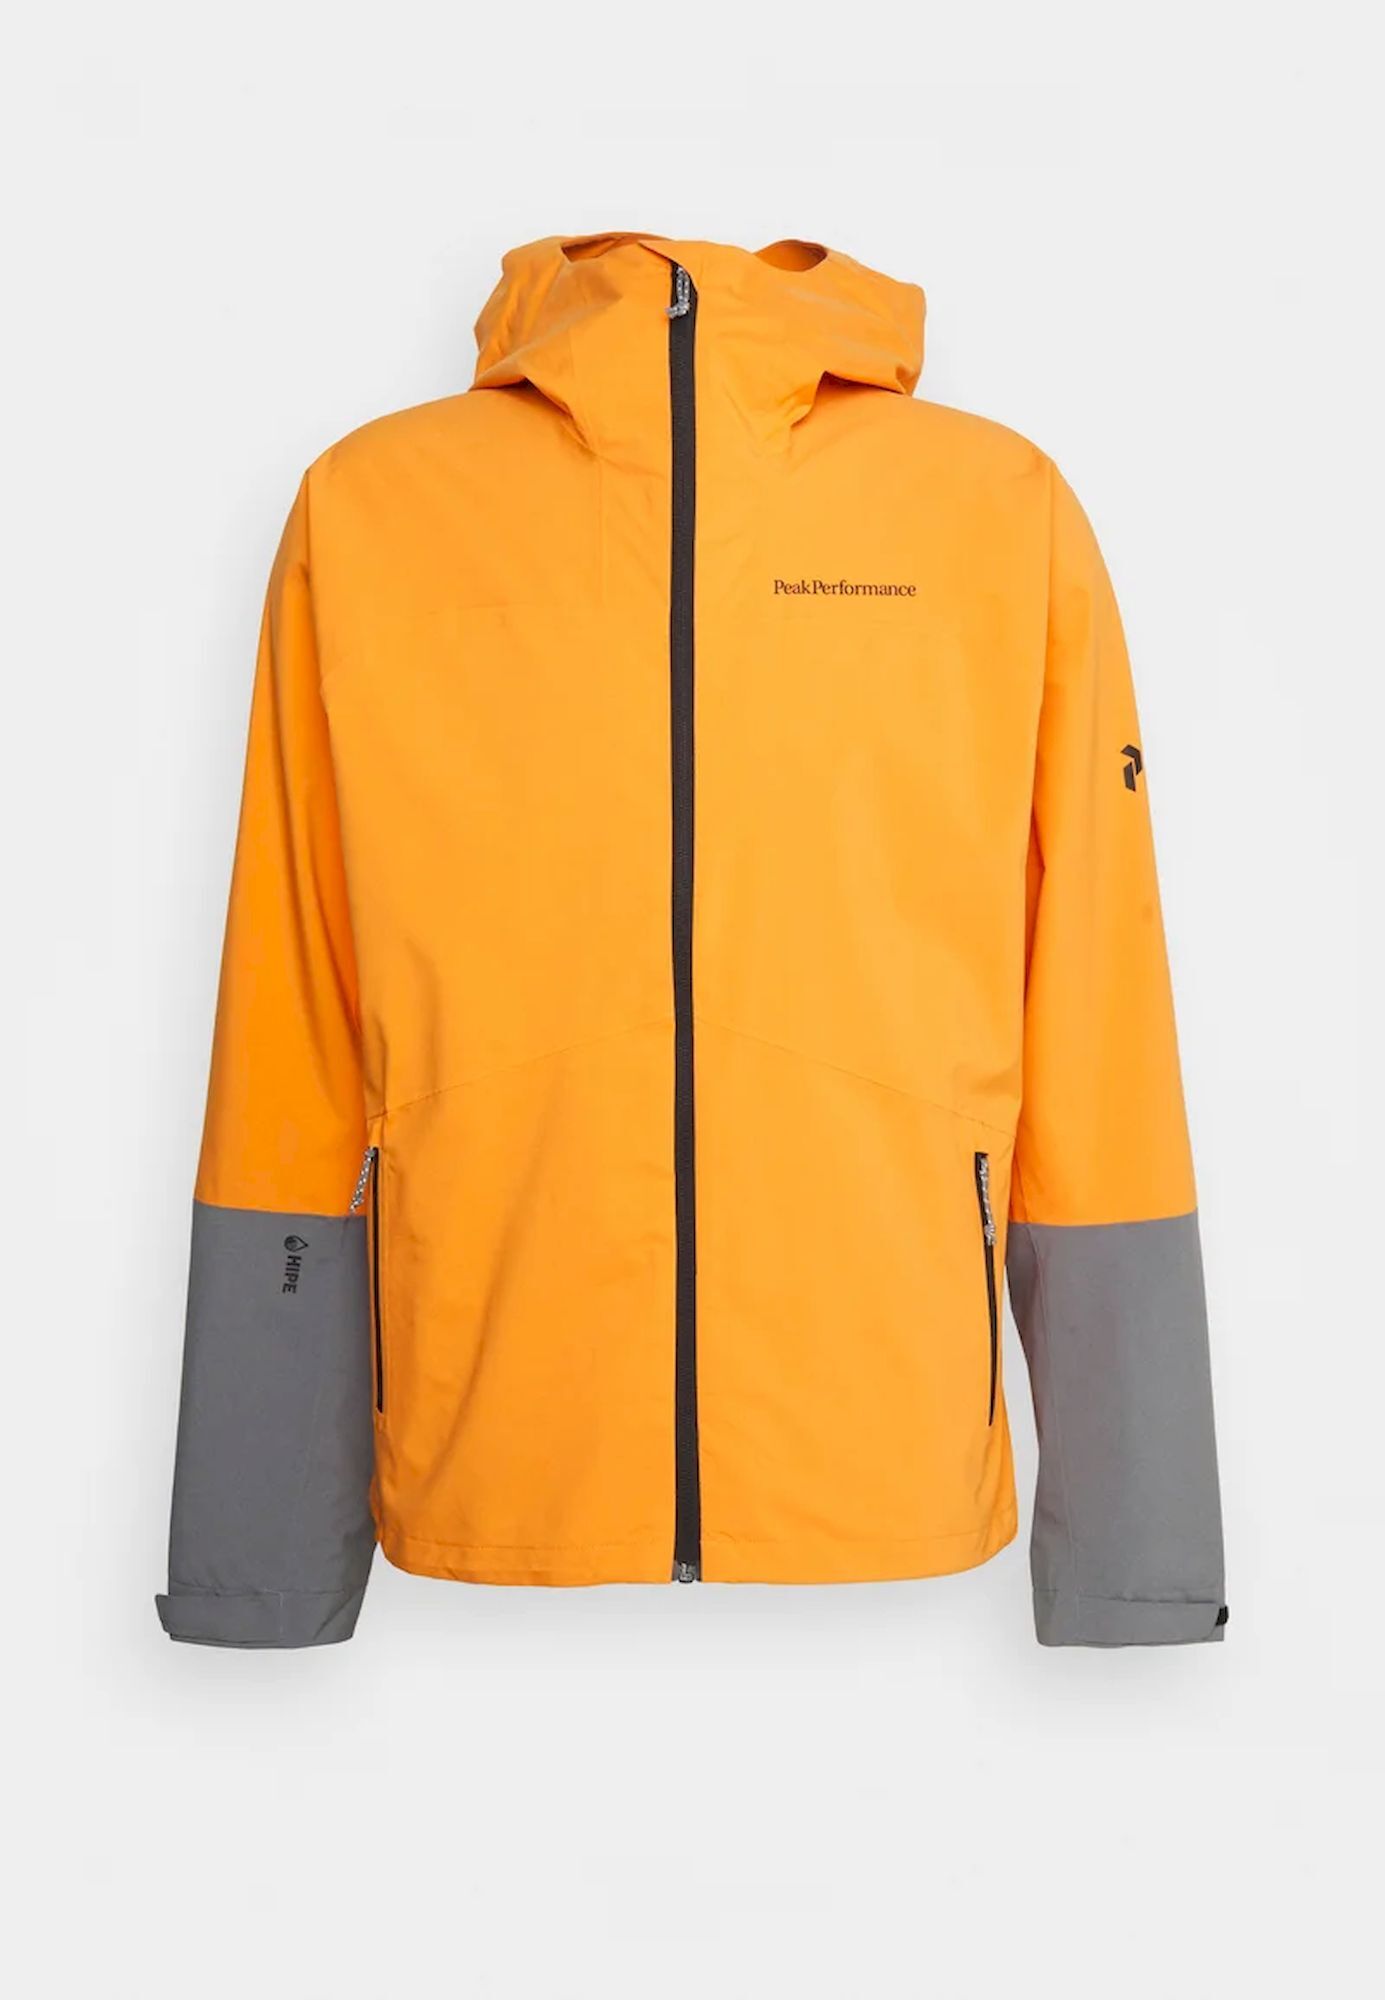 Peak Performance Nightbreak Jacket - Waterproof jacket - Men's